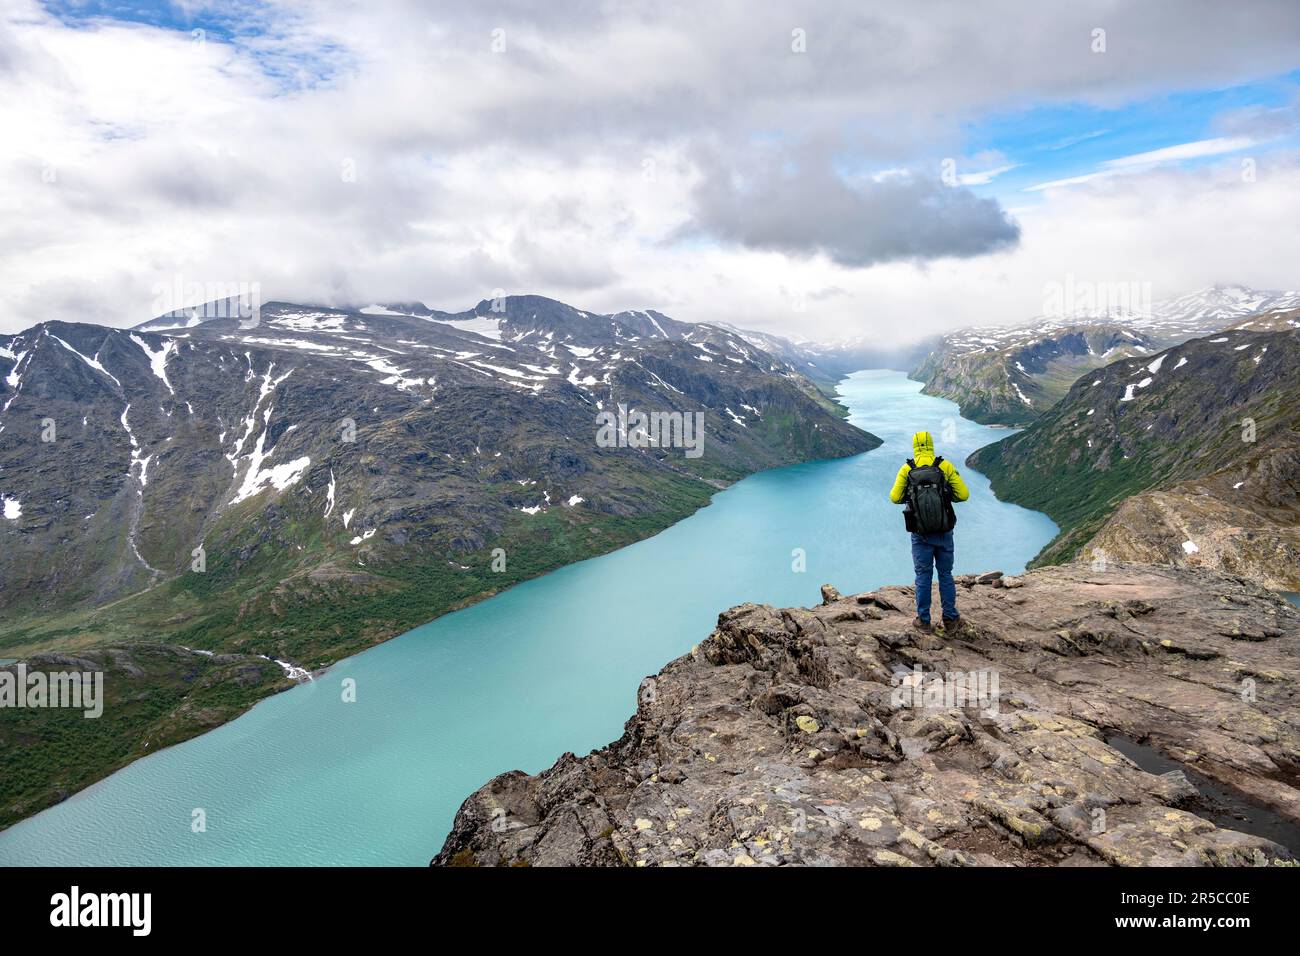 Alpinismo, escursione a Besseggen, passeggiata sul crinale, vista sul lago Gjende e sulle montagne innevate, Parco Nazionale di Jotunheimen, Vaga, Innlandet, Norvegia Foto Stock